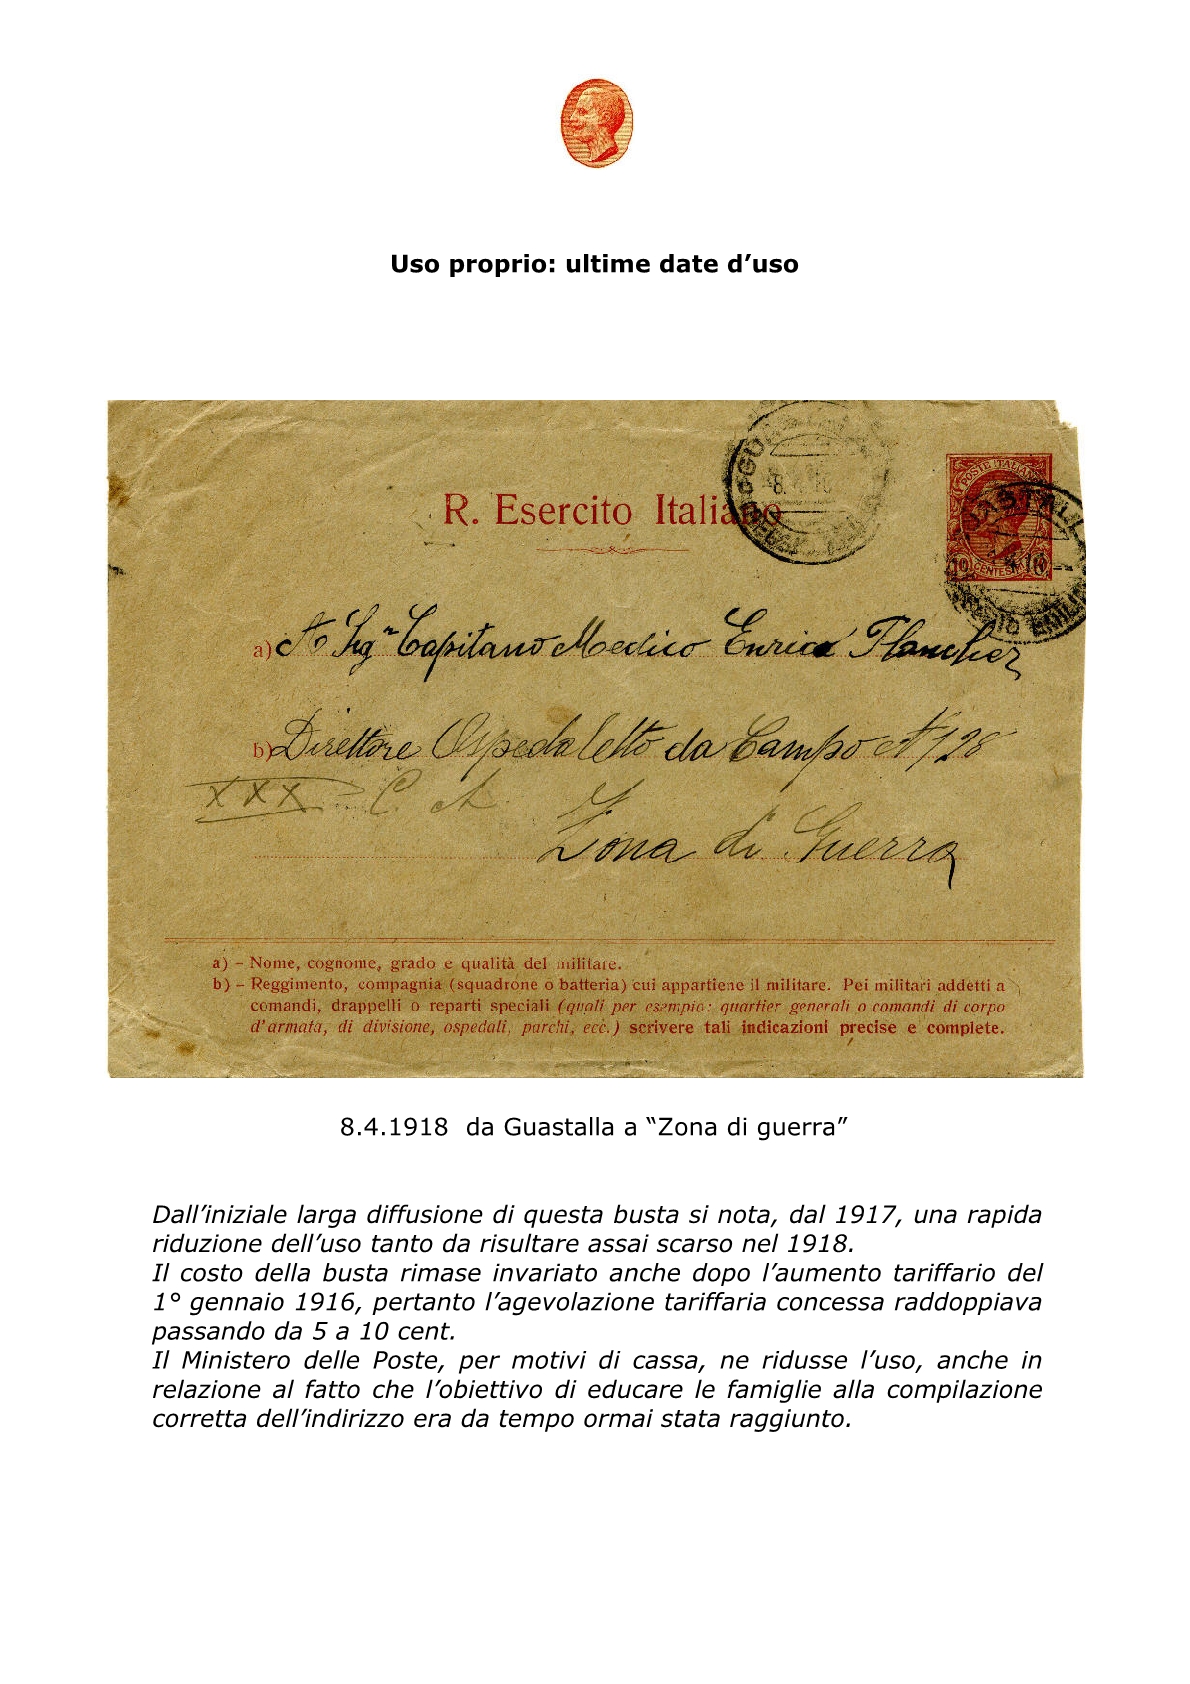 La busta postale R. Esercito Italiano 20155